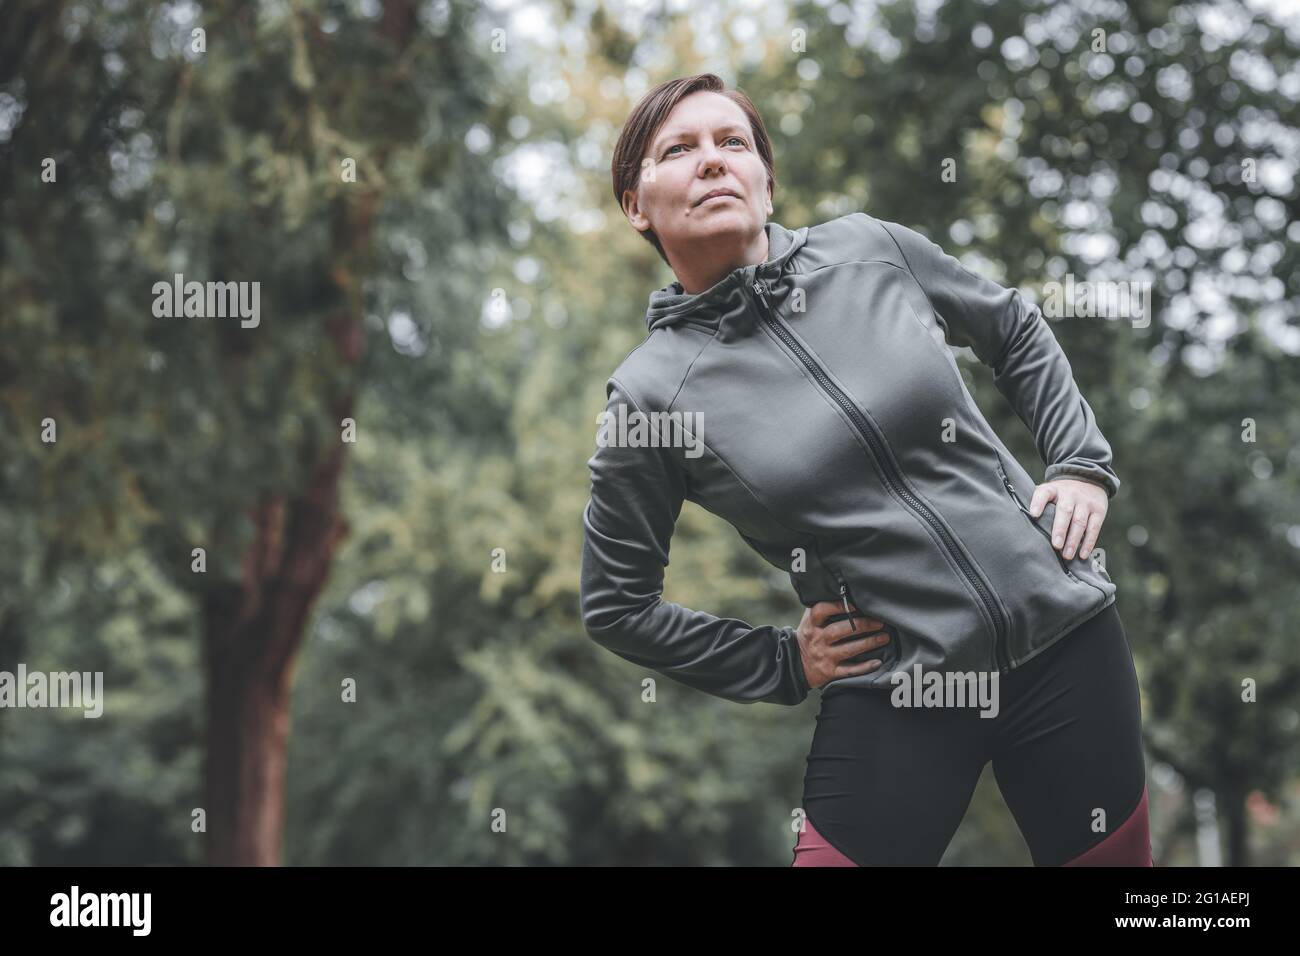 Porträt einer erwachsenen Joggerin, die sich in den 40er Jahren im Park dehnt und sich aufwärmt, um auf der Strecke zu laufen, gesund zu leben und sich zu sportlich zu betätigen Stockfoto